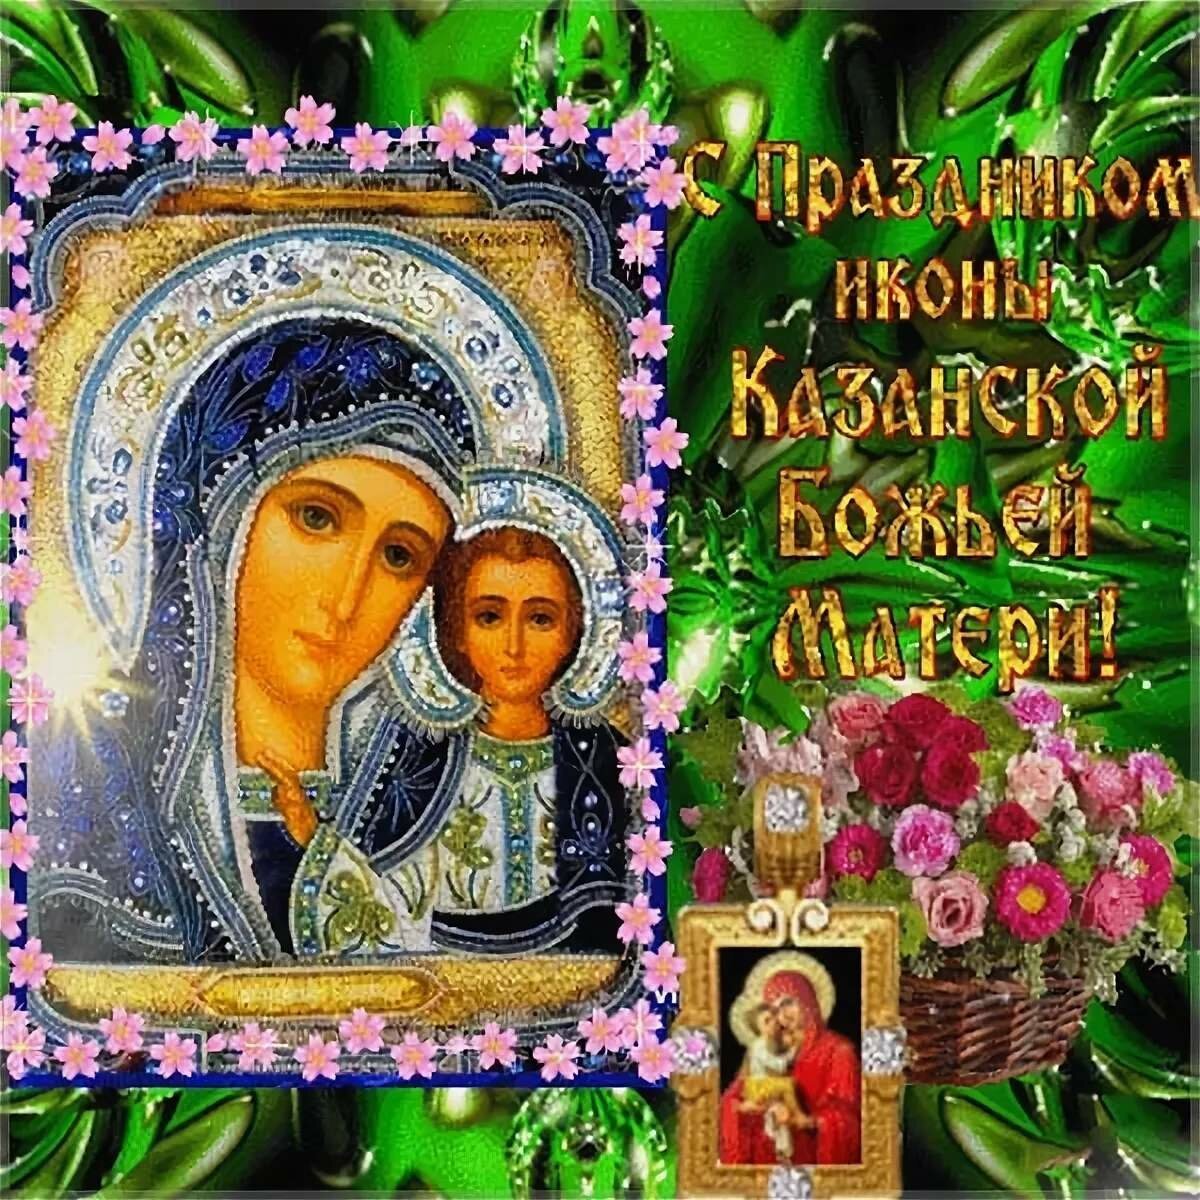 Фотографии и картинки Казанской Божьей матери: мощь веры в каждом изображении